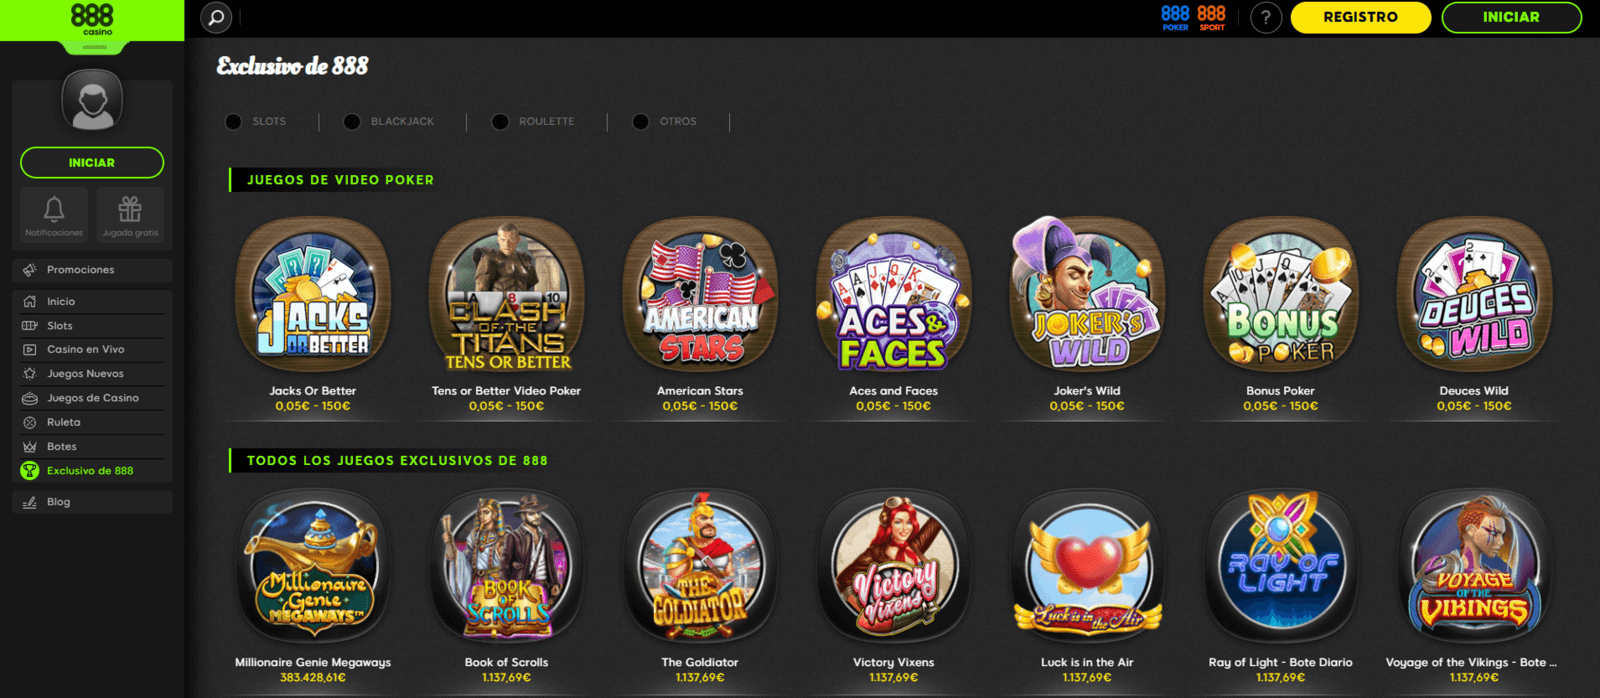 Juegos exclusivos de 888 casino online de España en 888.es